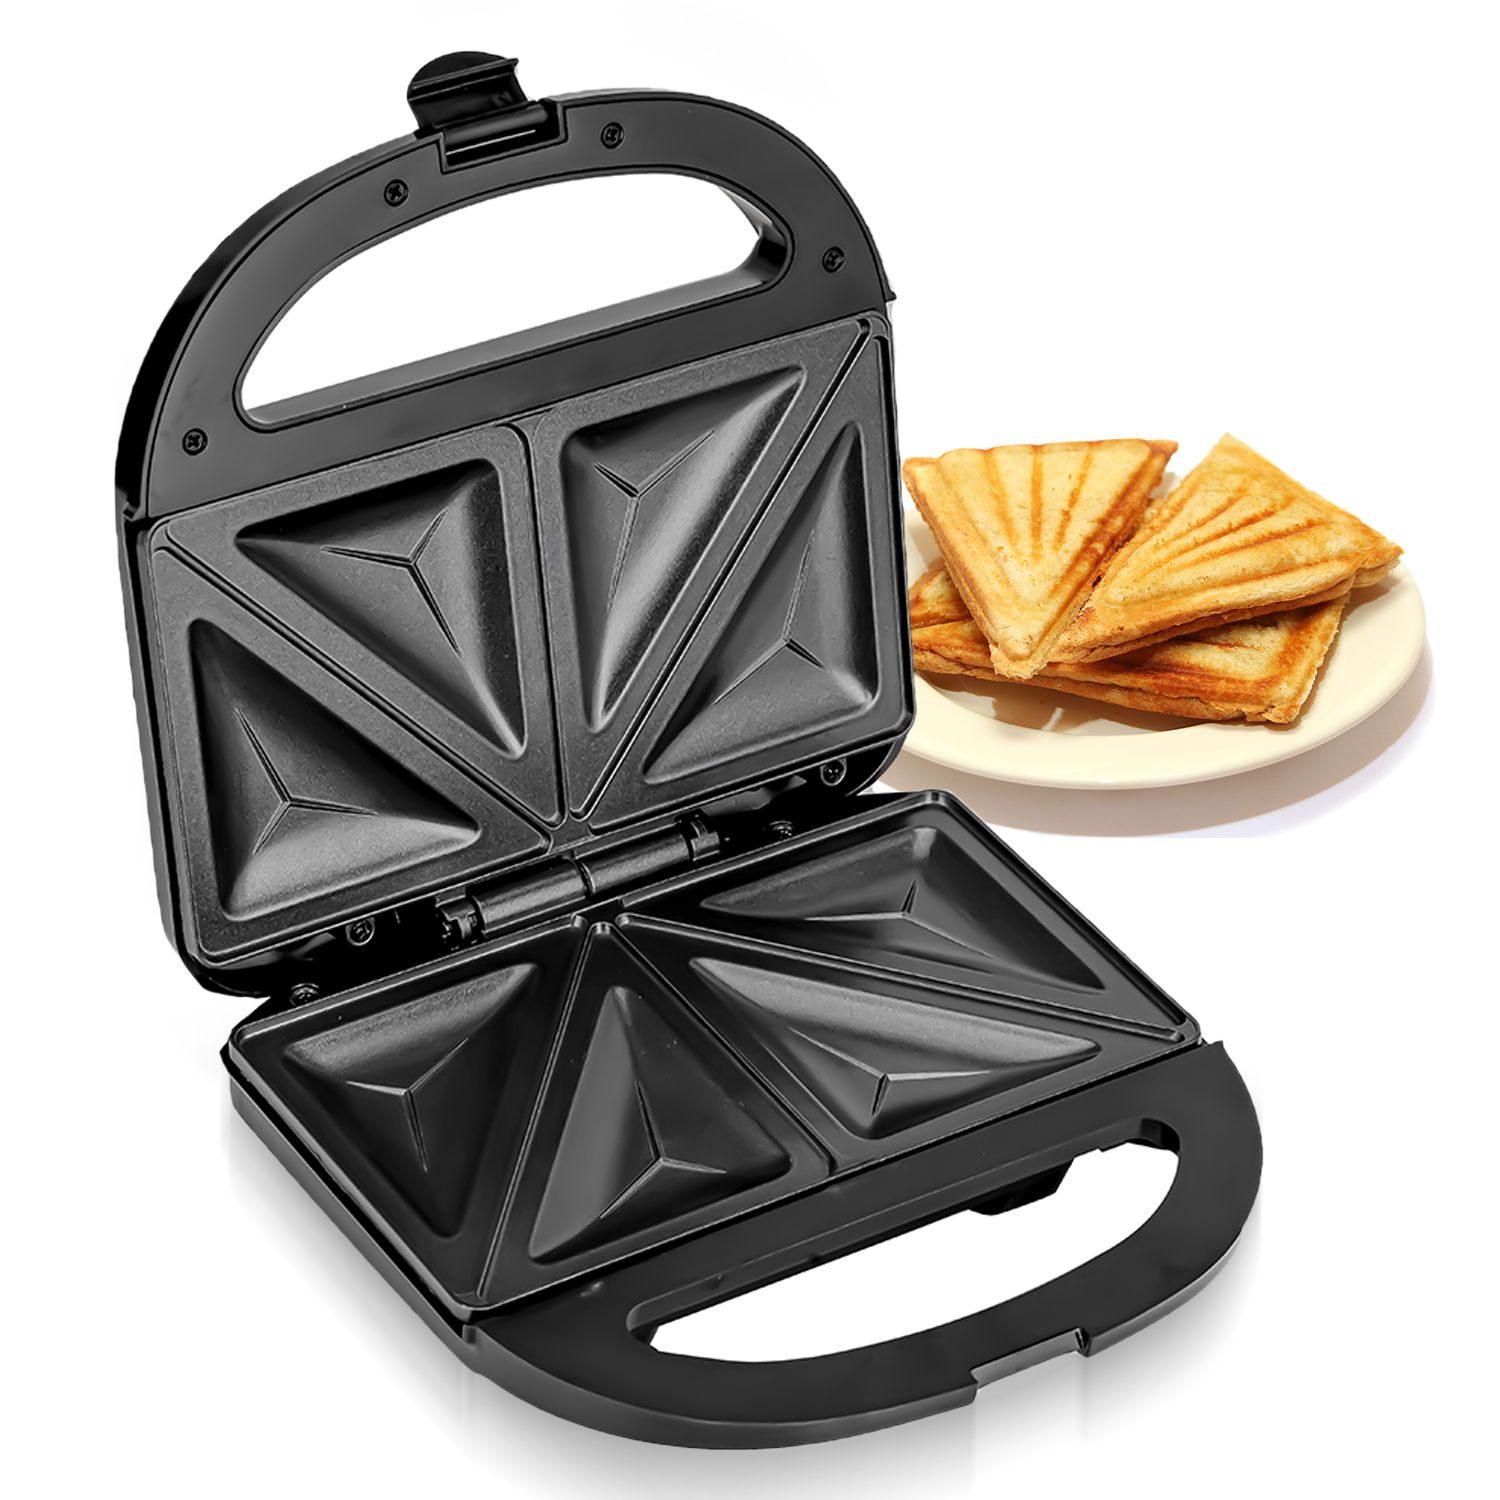 Mini Electric Sandwich Maker: Double Side Heat 2 Slice Breakfast Toaster